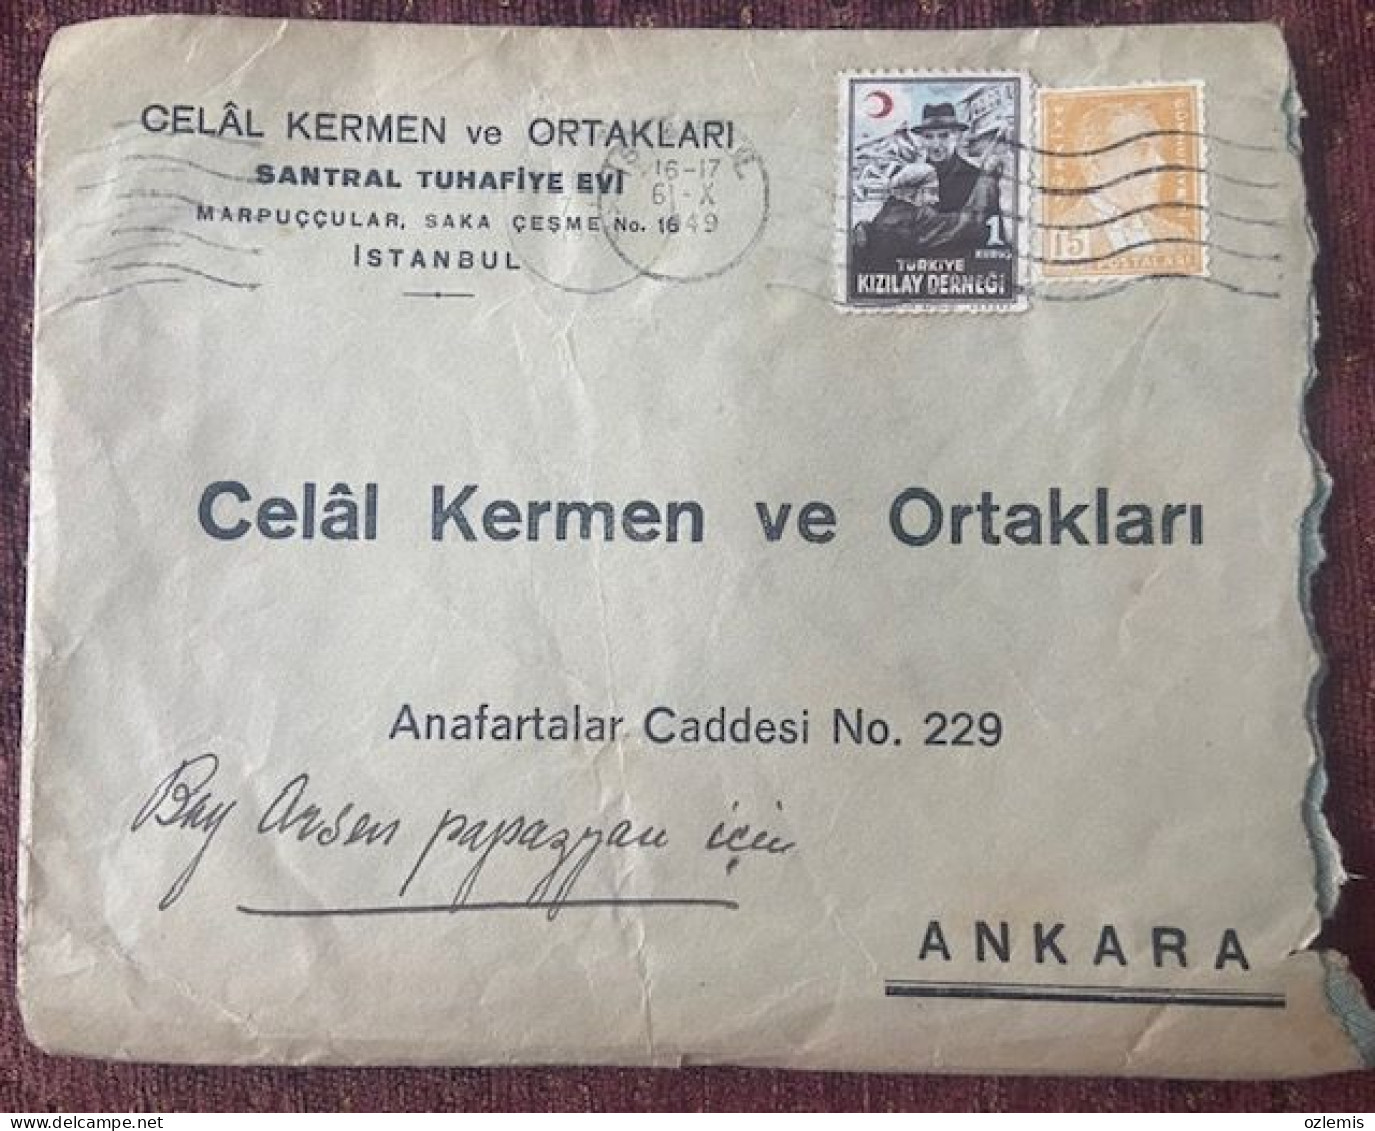 TURKEY,TURKEI,TURQUIE ,ISTANBUL TO ANKARA ,1949,COVER - Briefe U. Dokumente